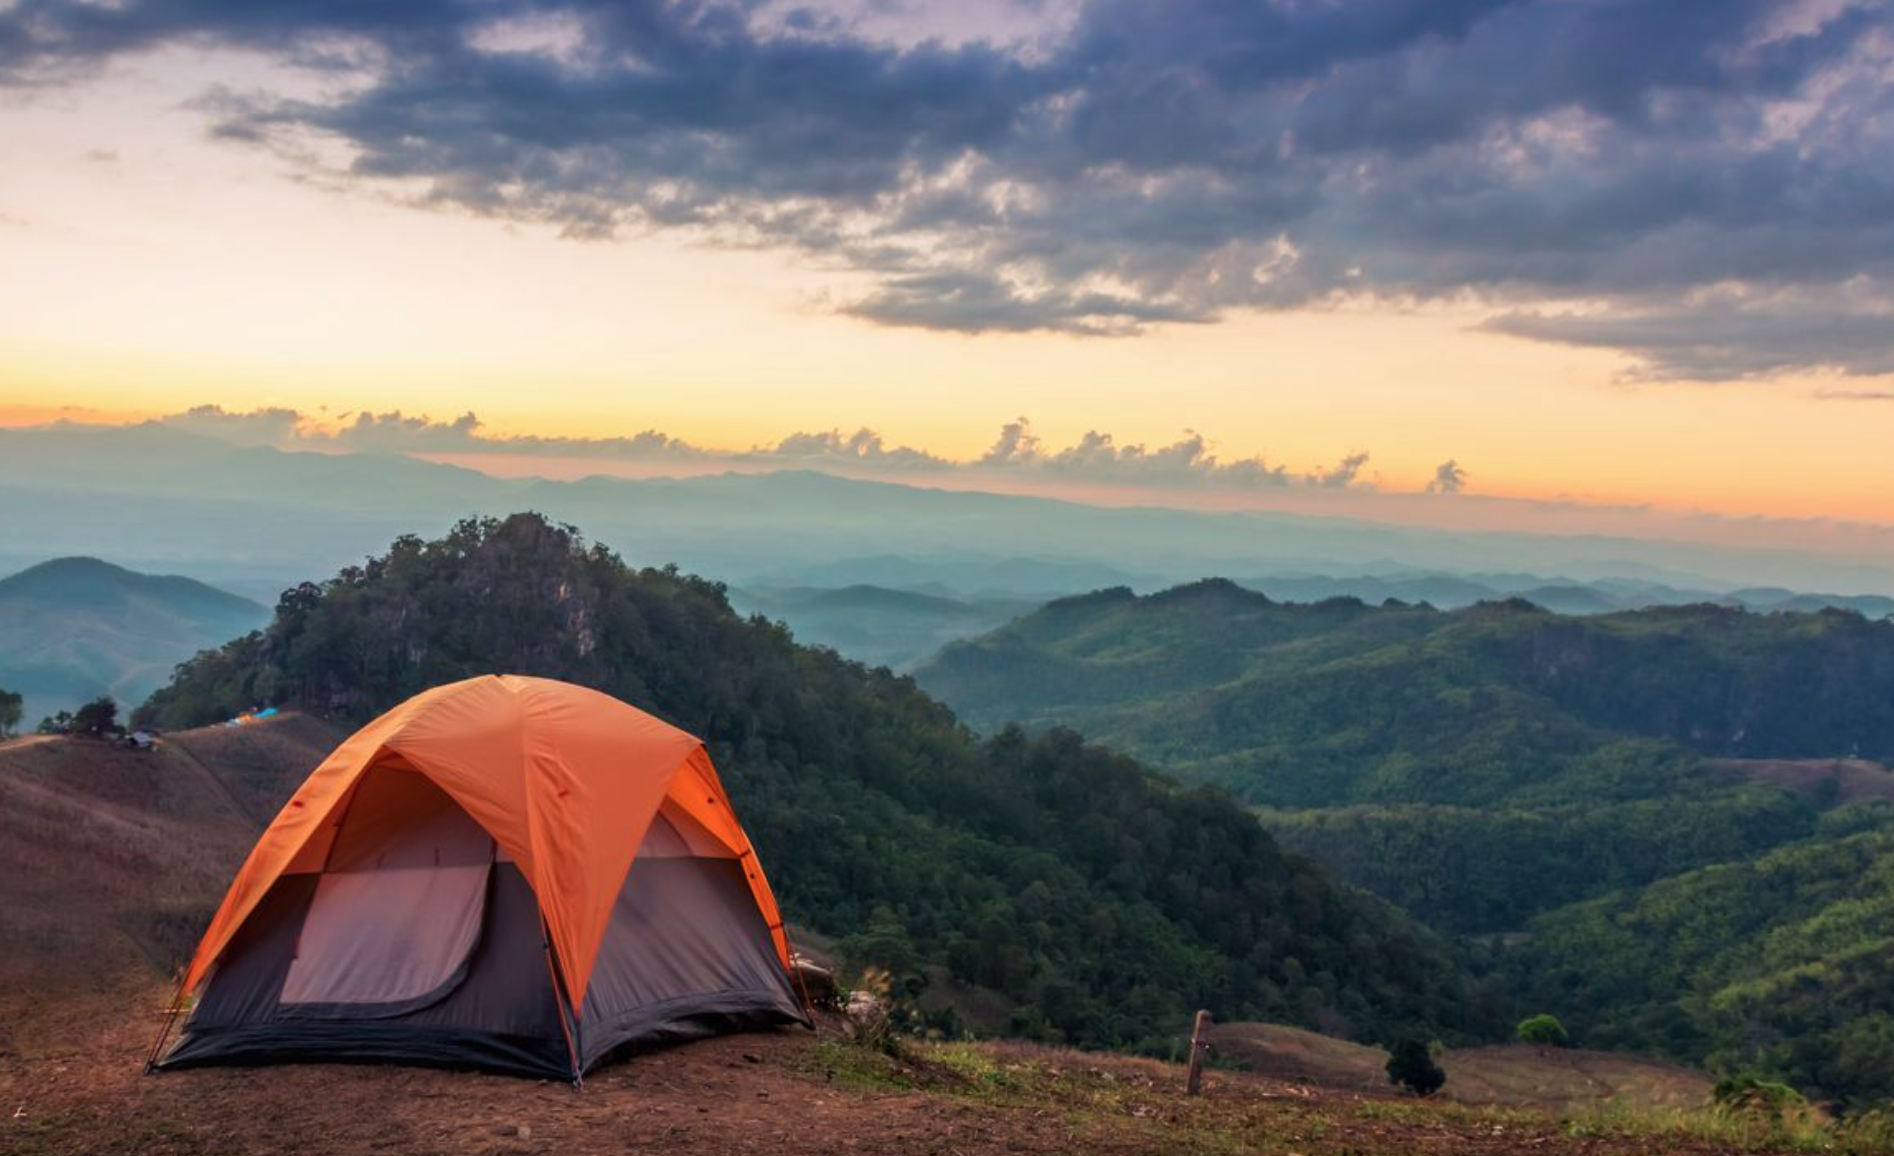 Mountains camping. Палатка Camping Tent. Кемпинг West Camp. Палатка в горах. Красивый вид из палатки.